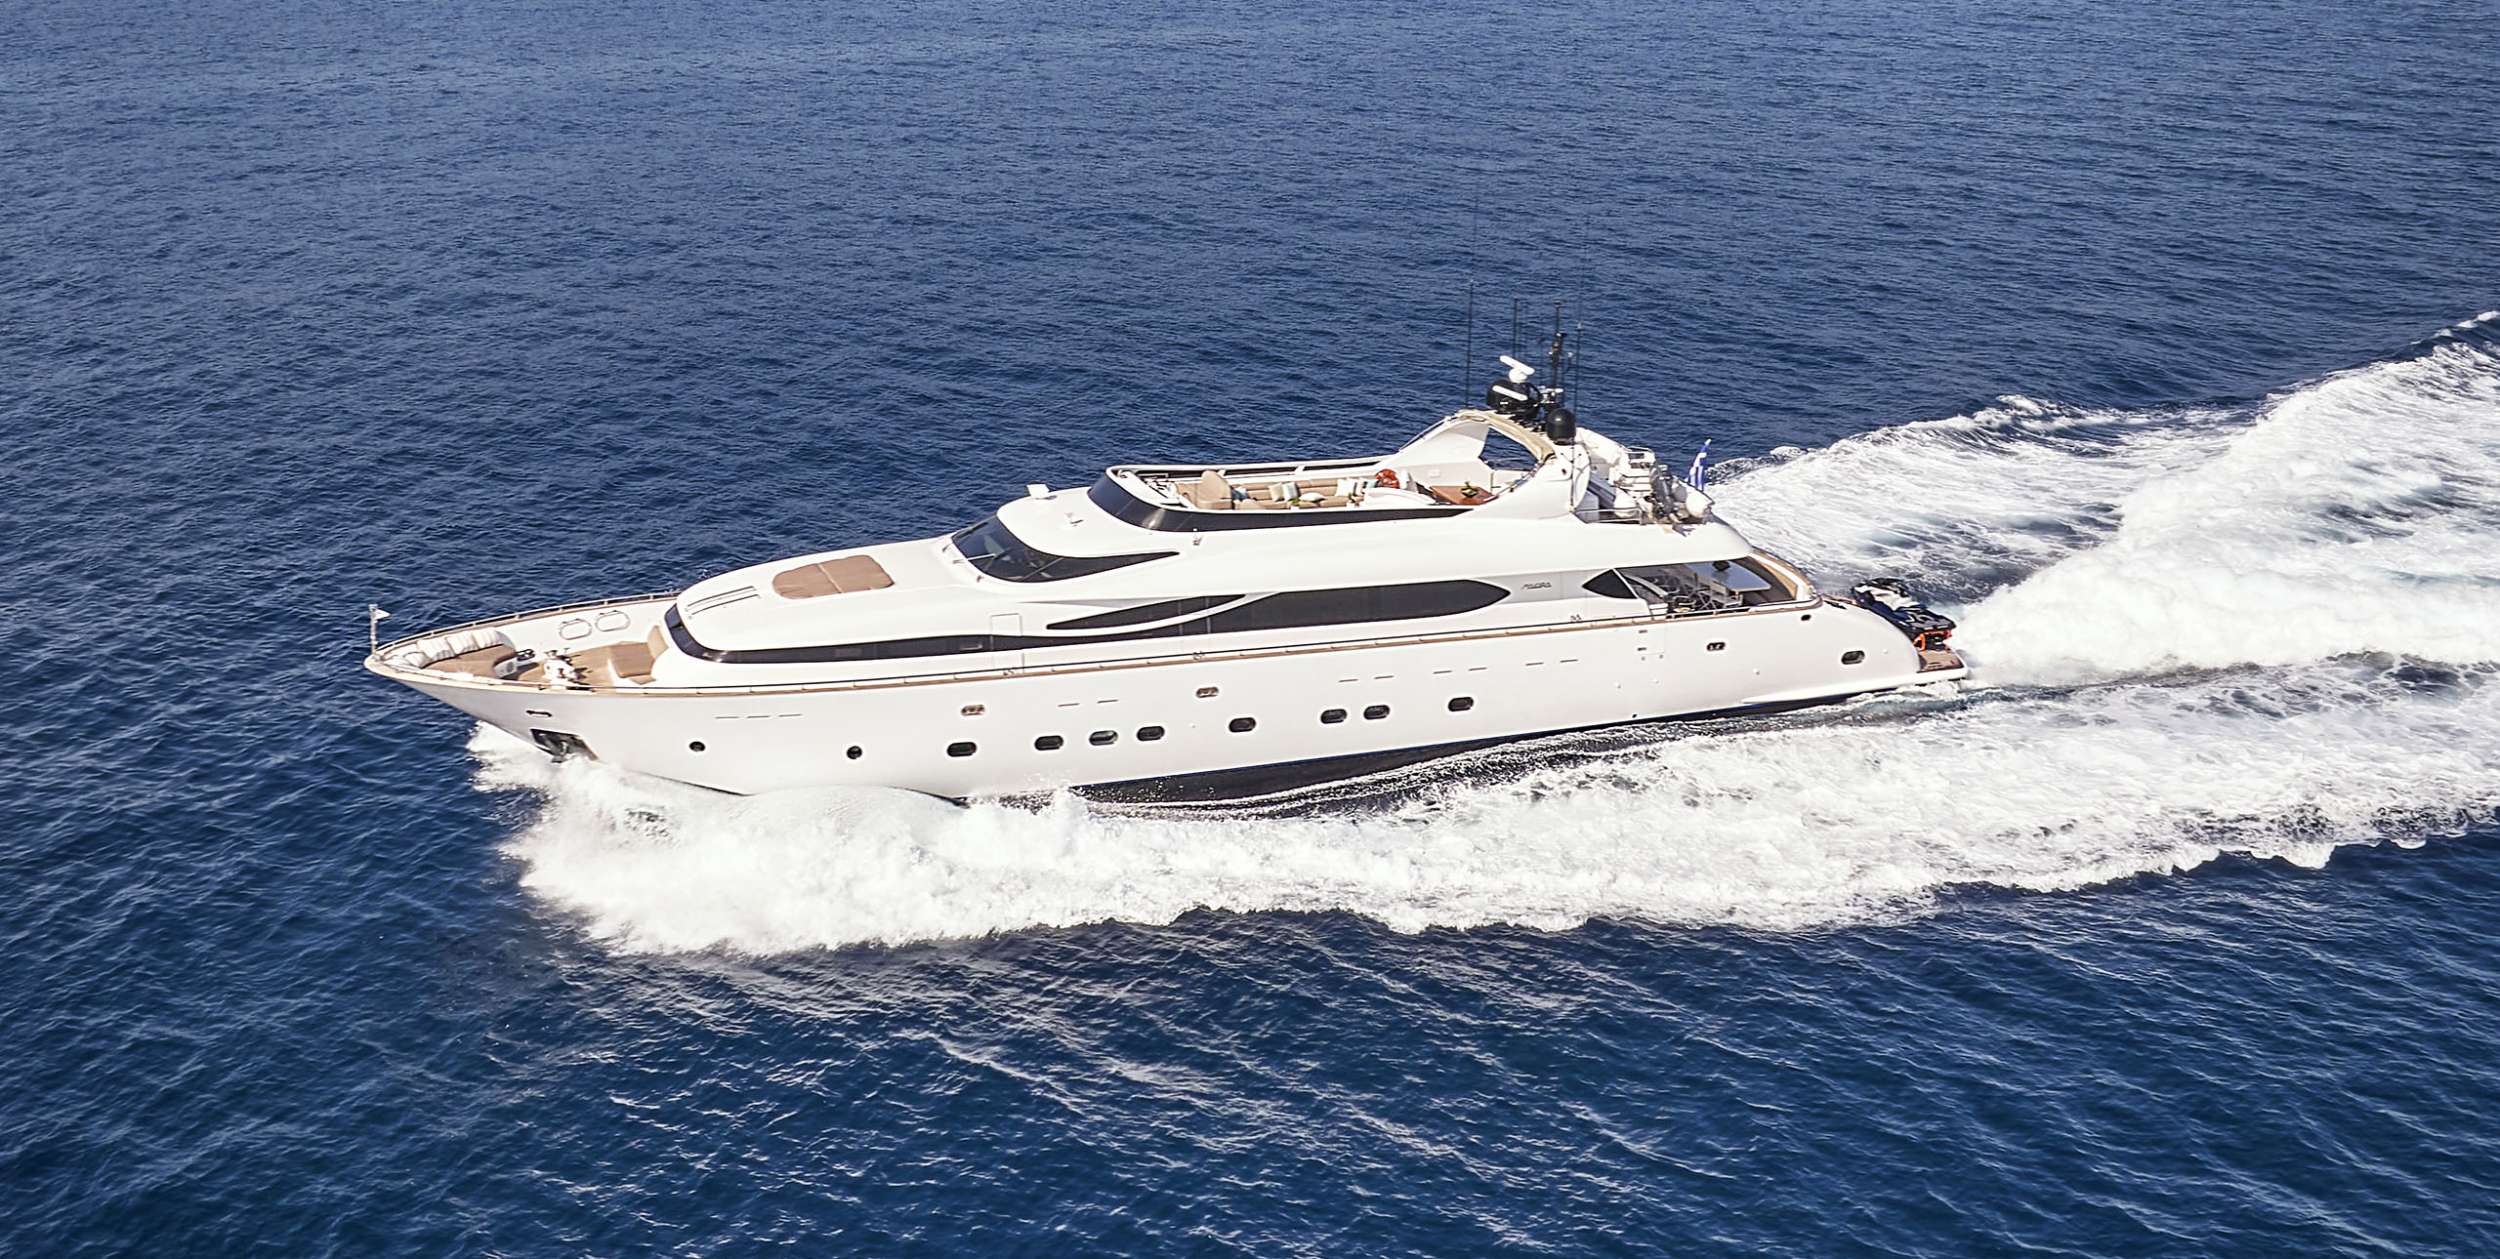 Anasa Luxury Crewed Maiora 115 Yacht Charter Cruising Greece.